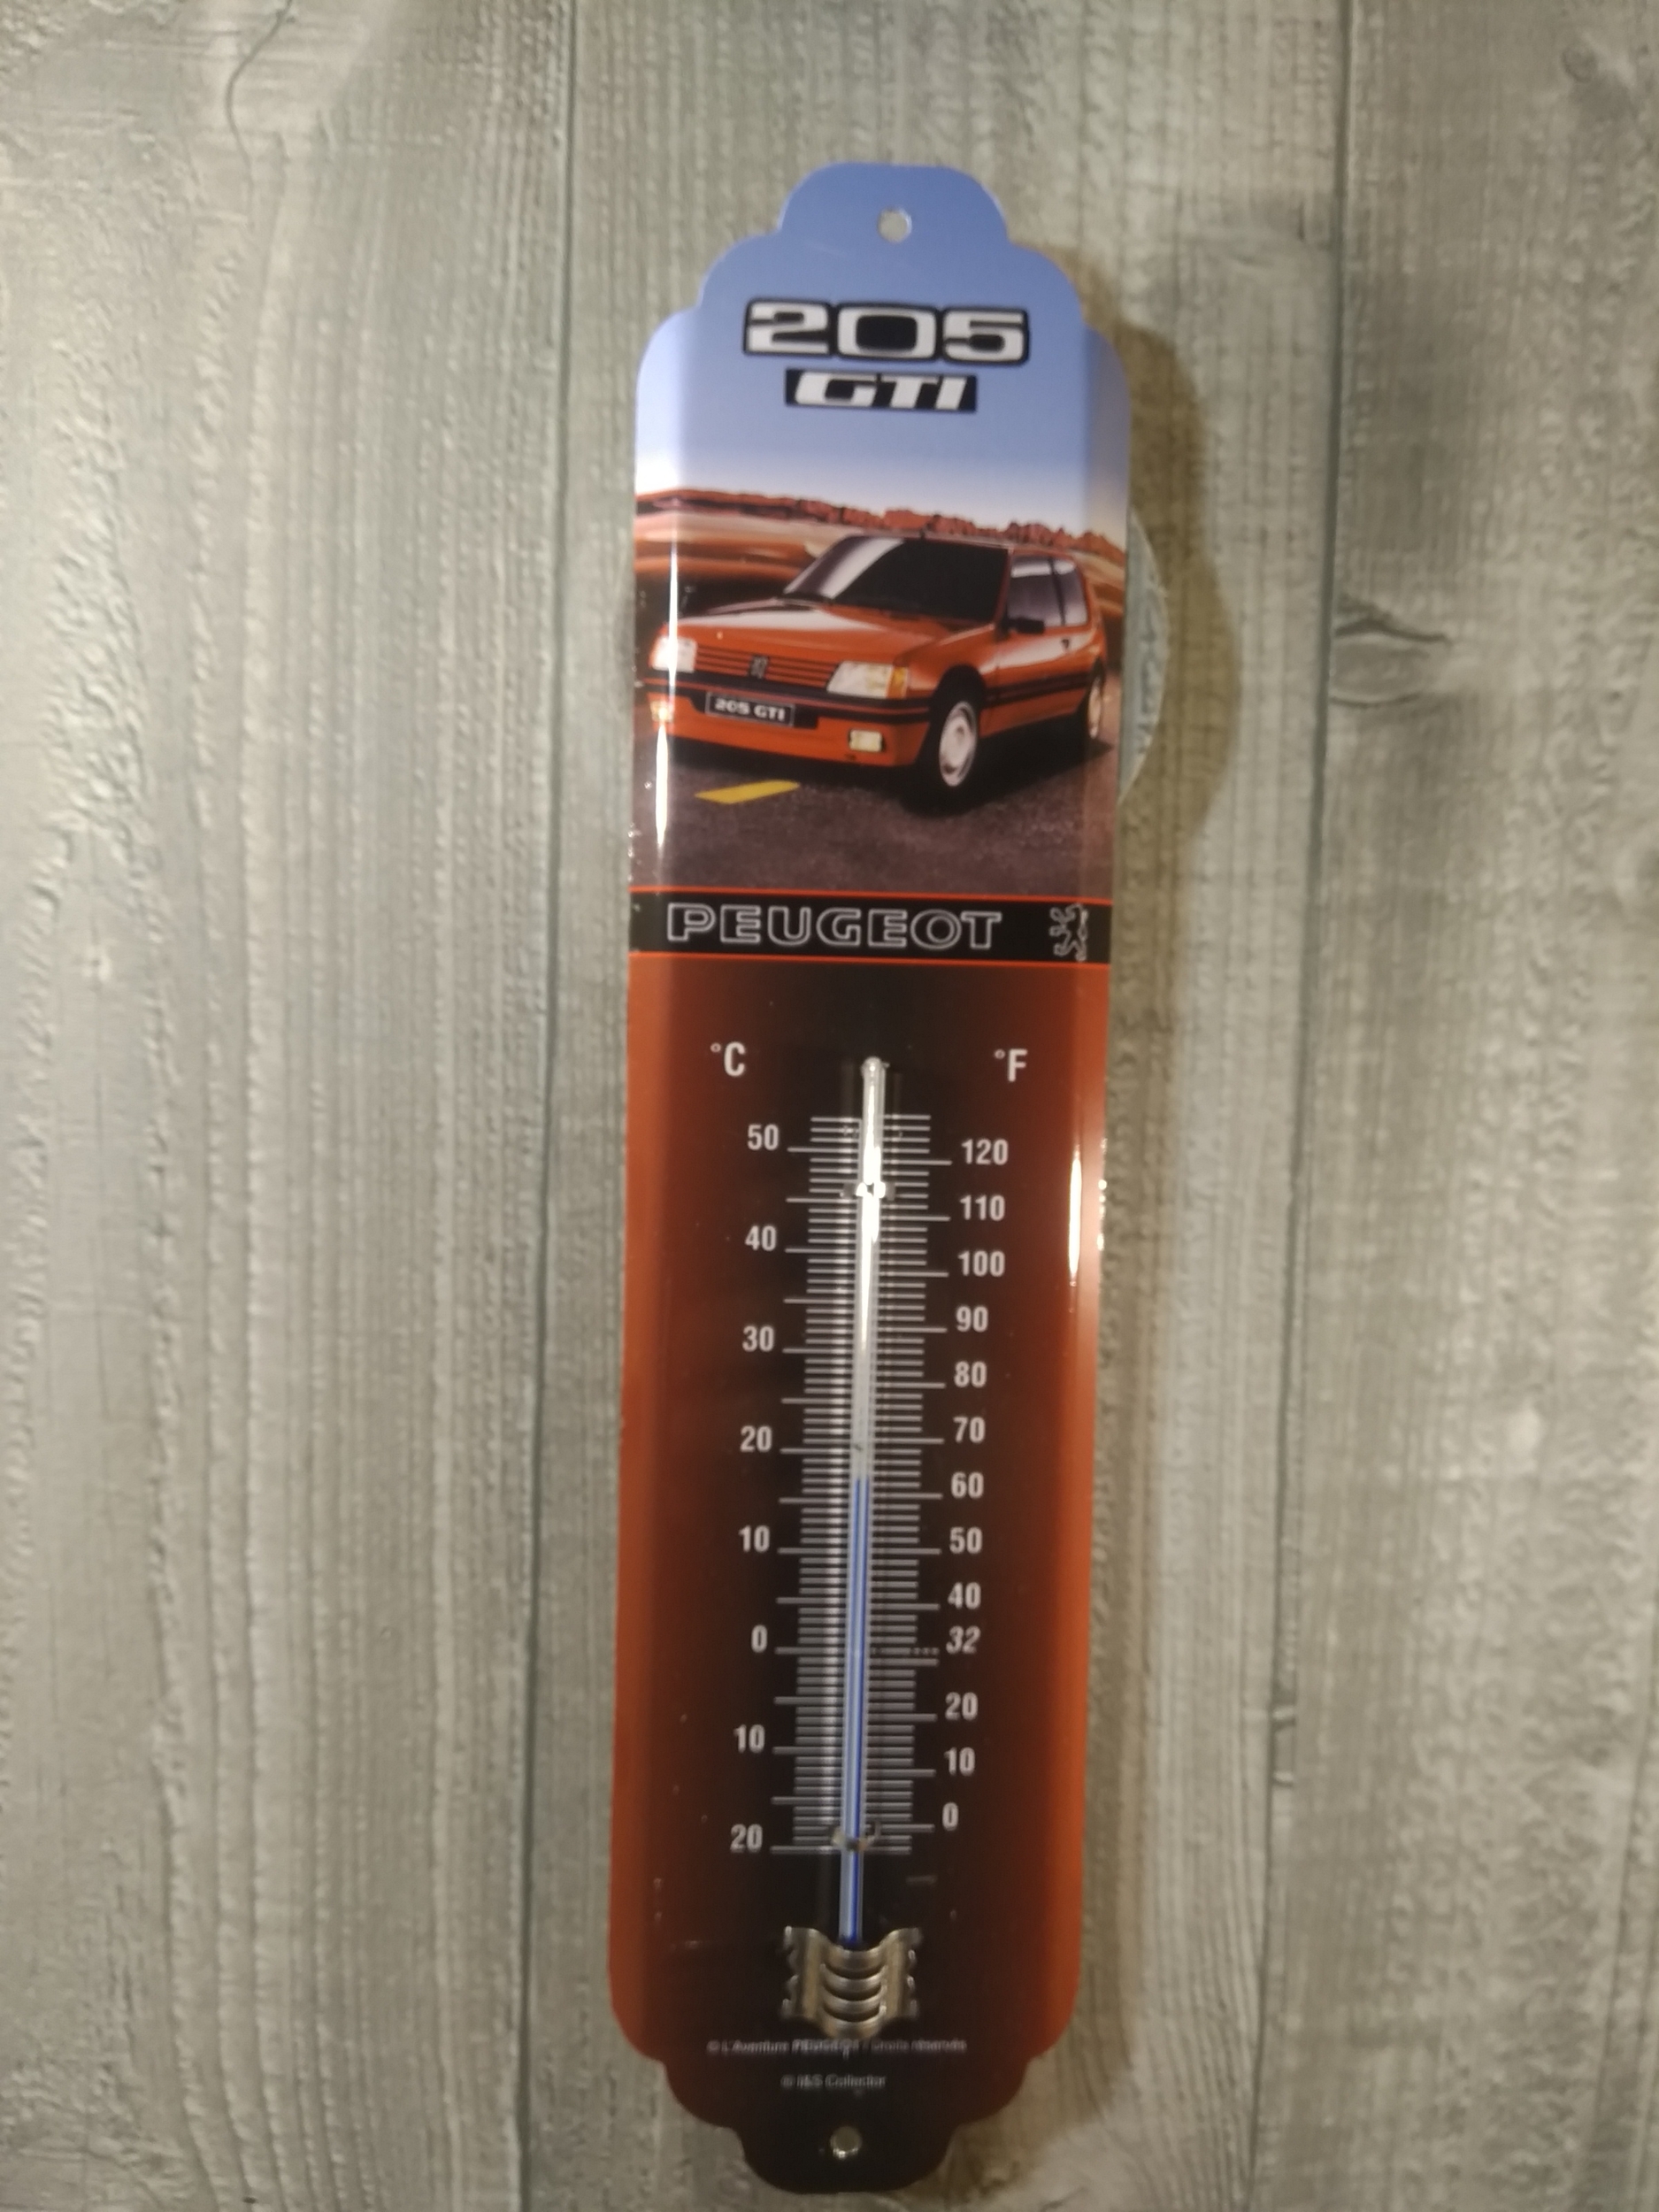 thermomètre métal peugeot 205 gti vintage